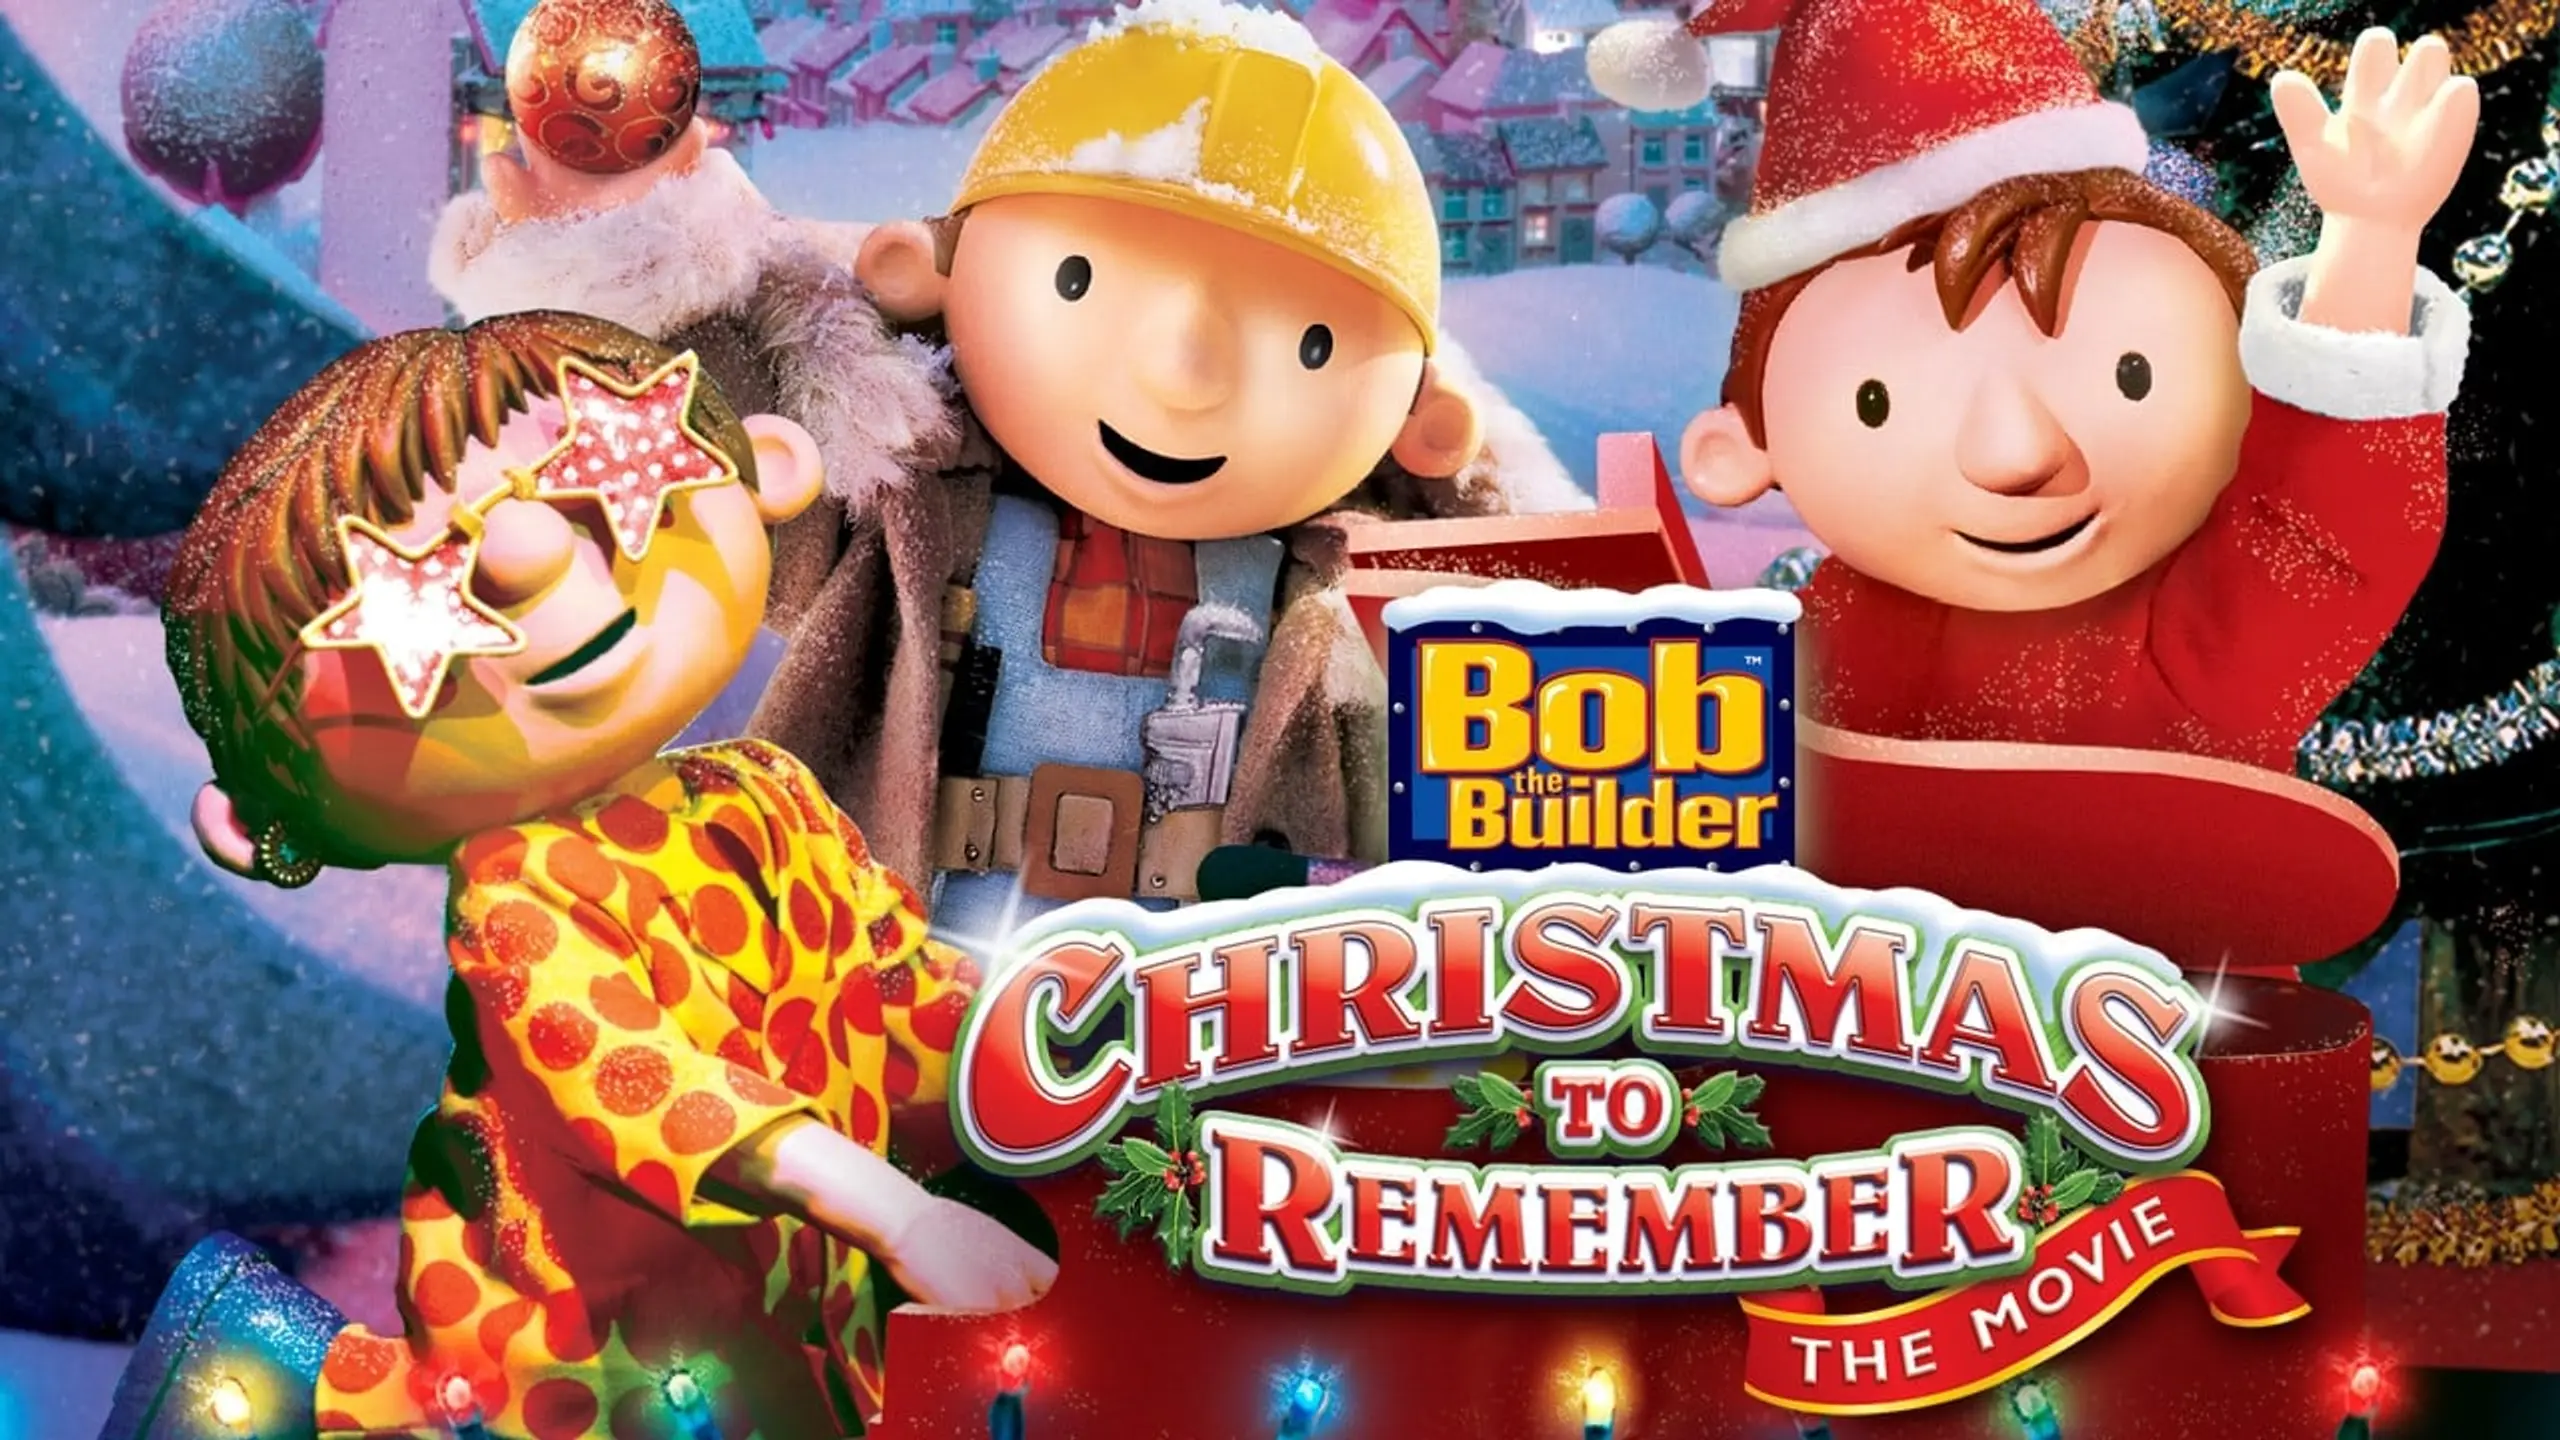 Bob der Baumeister - Bobs schönstes Weihnachtsfest